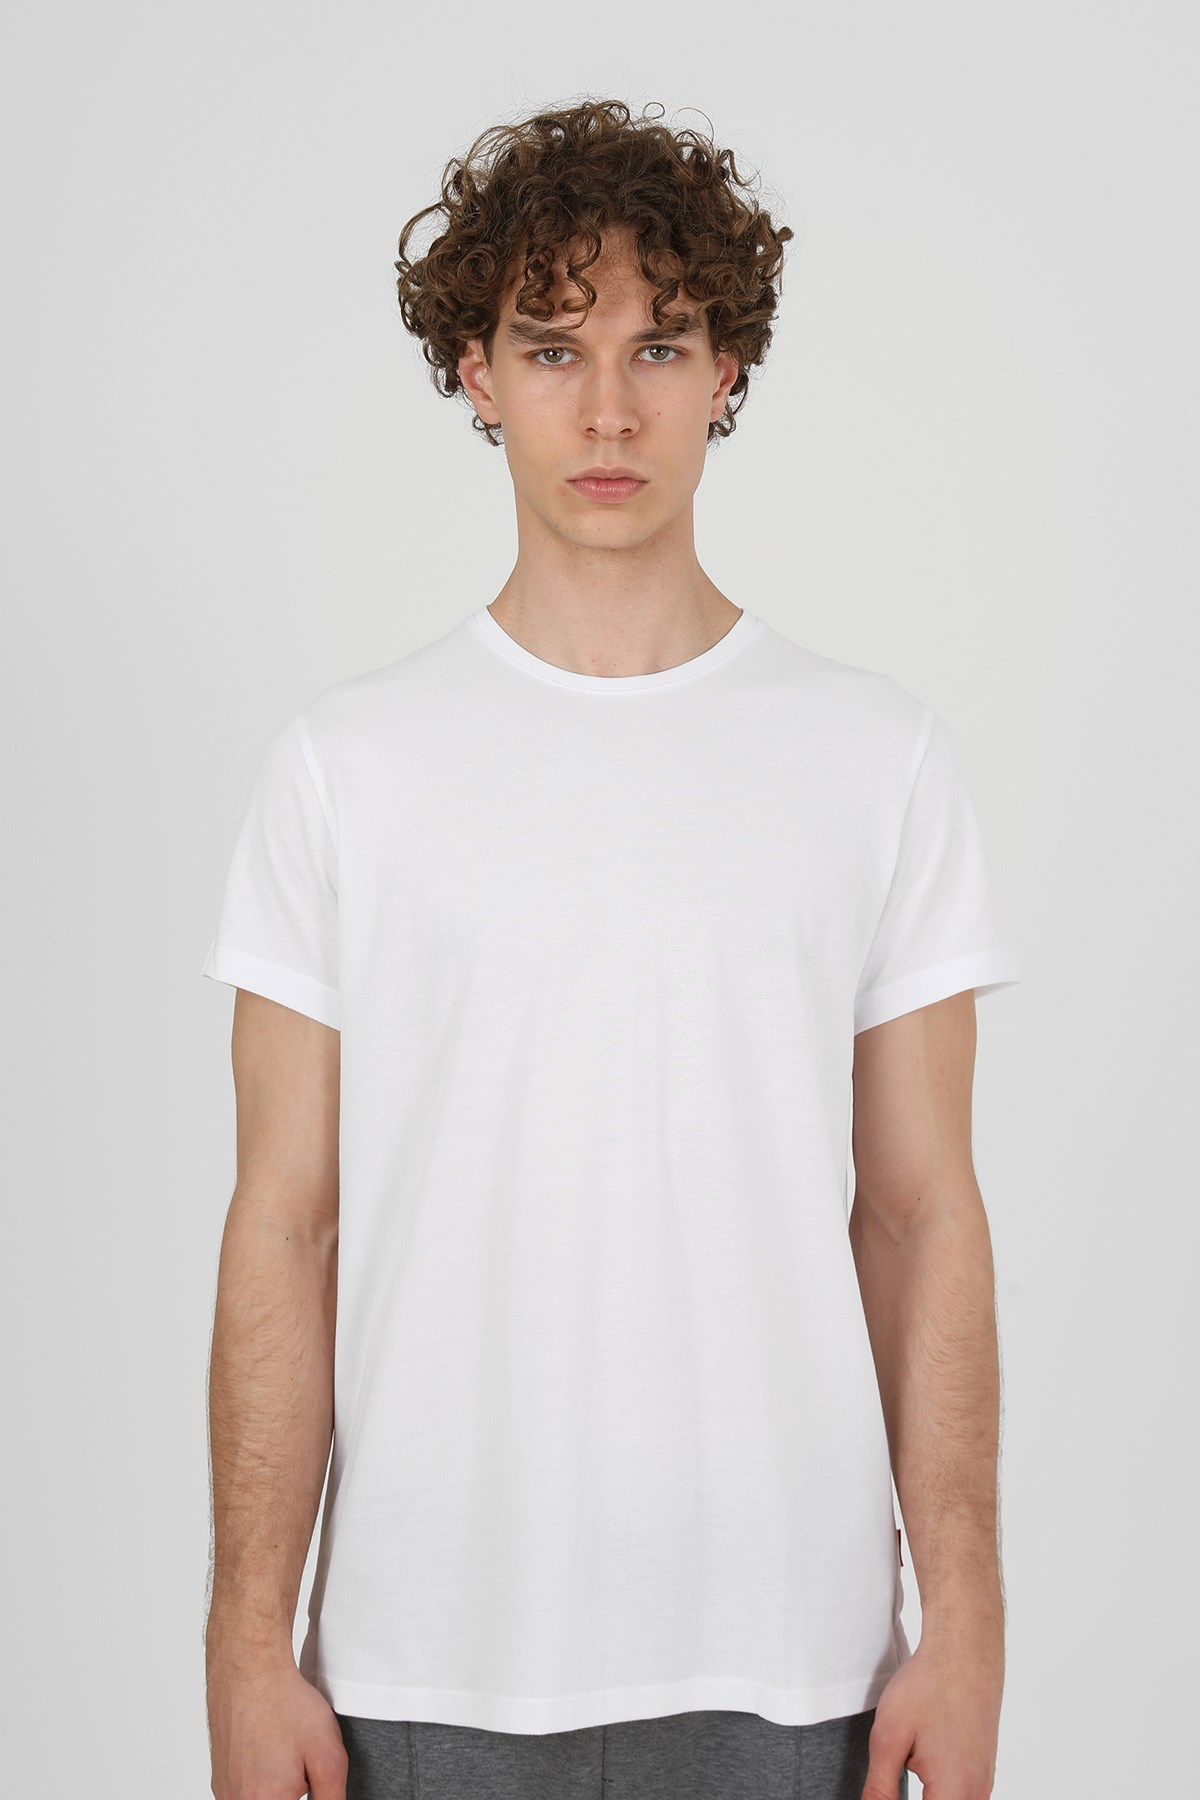 Erkek Basic Pike T-Shirt |JOHN FRANK Basic Tişört Modelleri